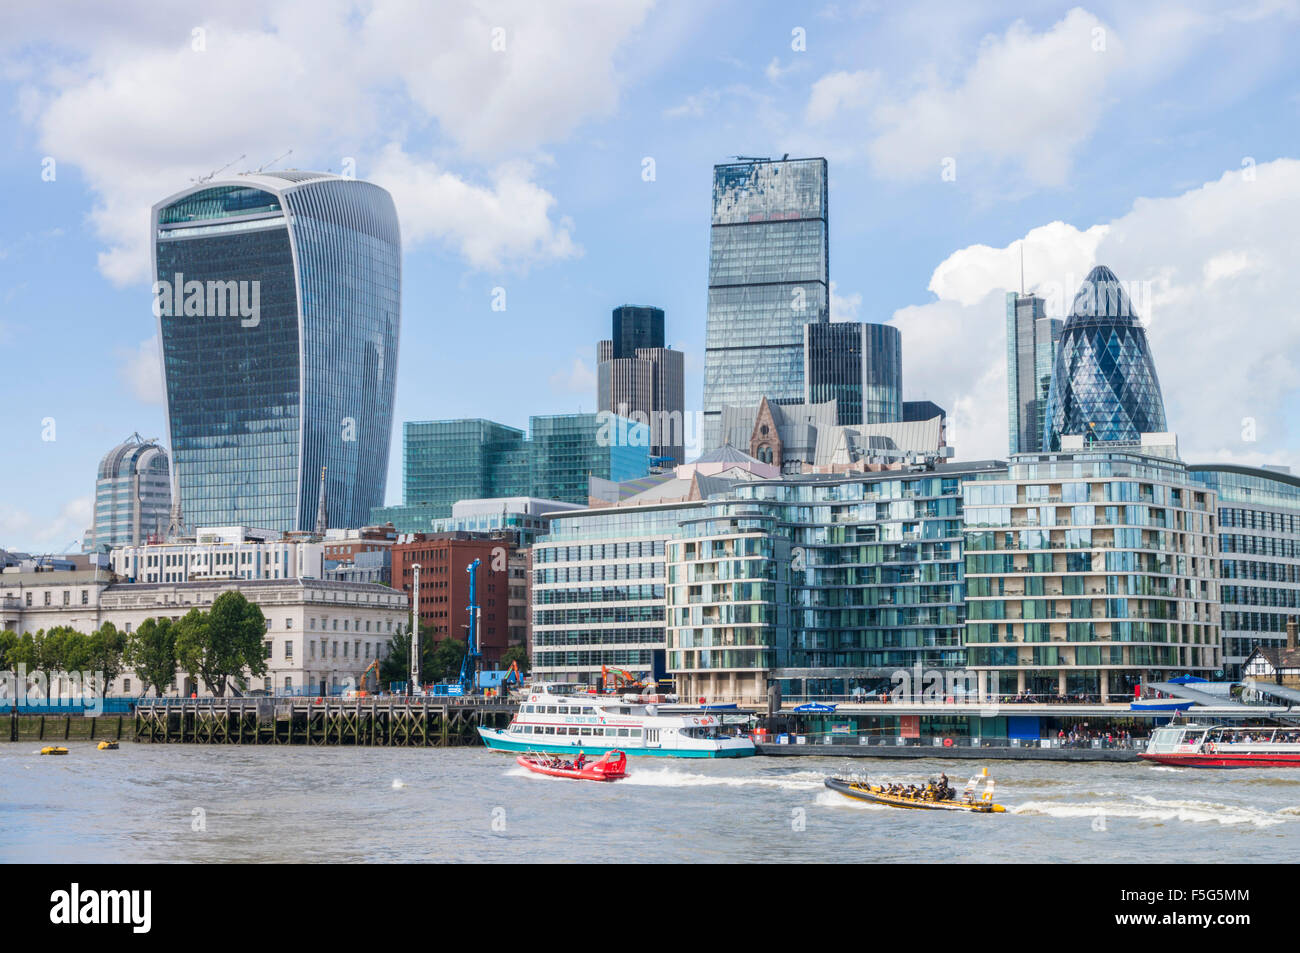 Der Londoner Skyline Finanzviertel Wolkenkratzer River Thames Stadt London UK GB EU Europas Stockfoto